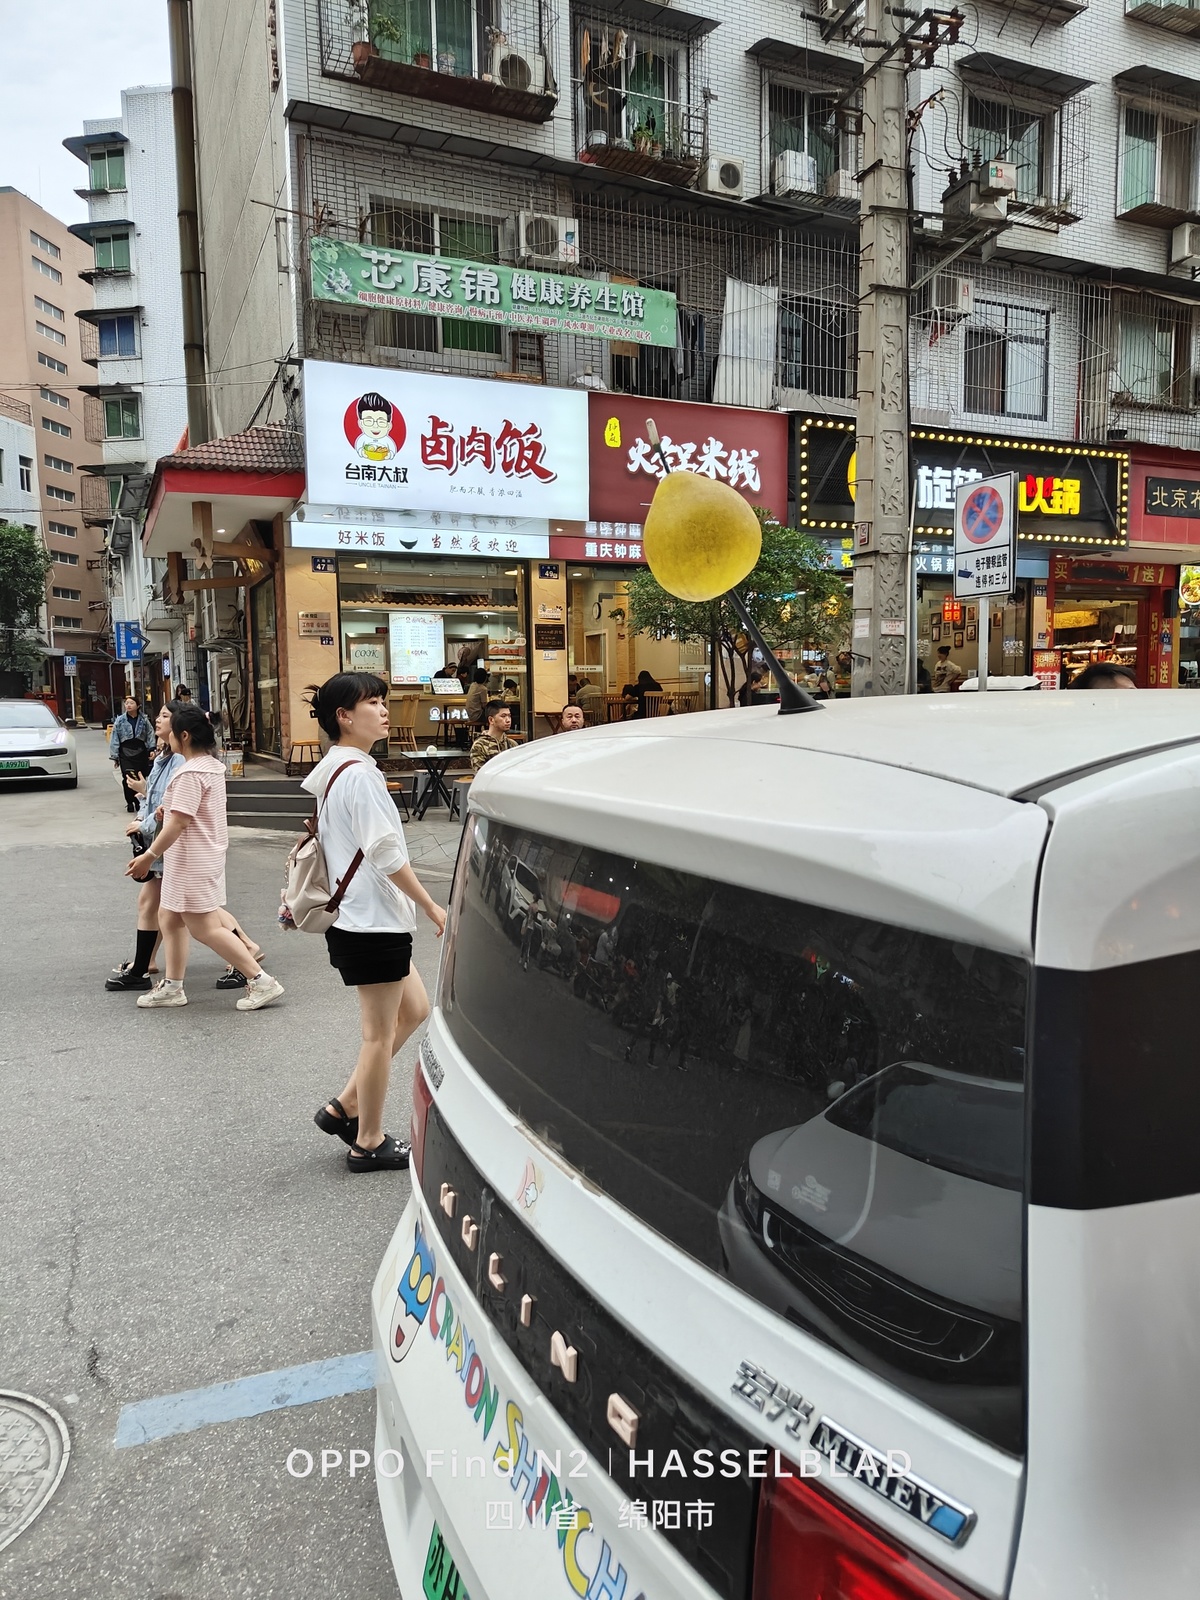 一条人行道上有行人行走 路中央有一辆带有黄色气球的白色汽车。